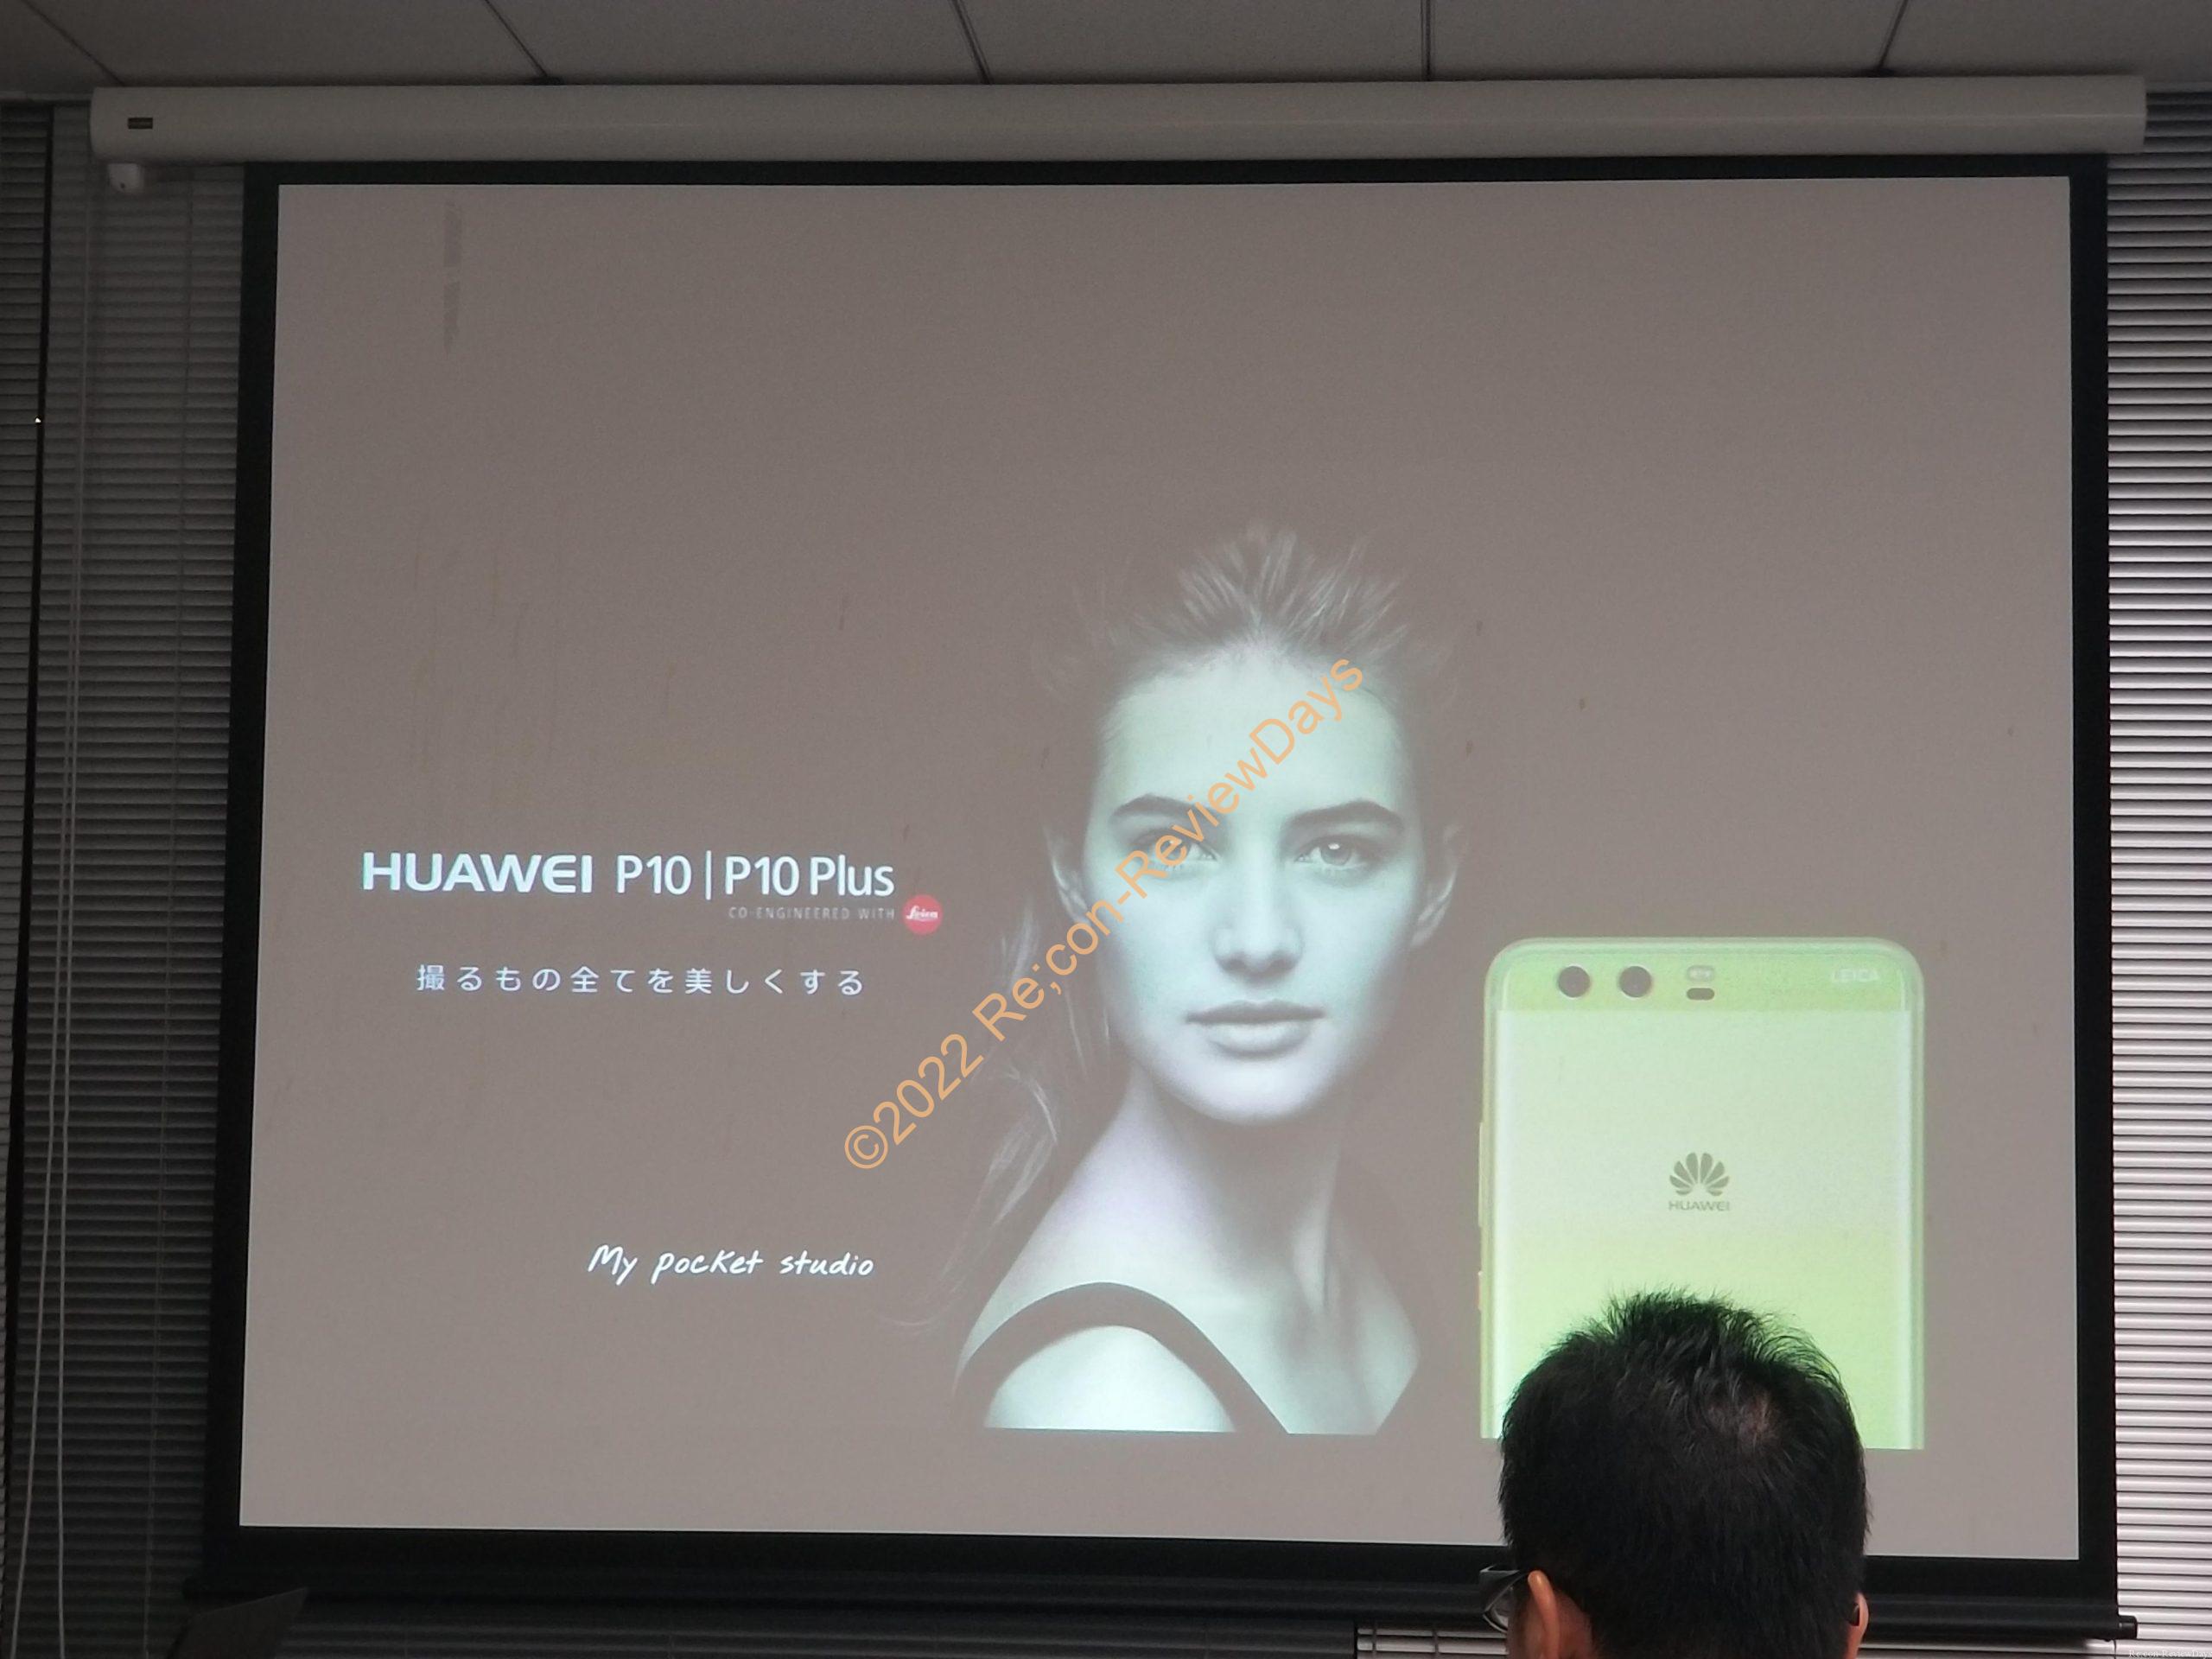 Huawei P10 Plus タッチアンドトライイベントに参加してきました #Huawei #P10Plus #Huaweiタッチアンドトライ